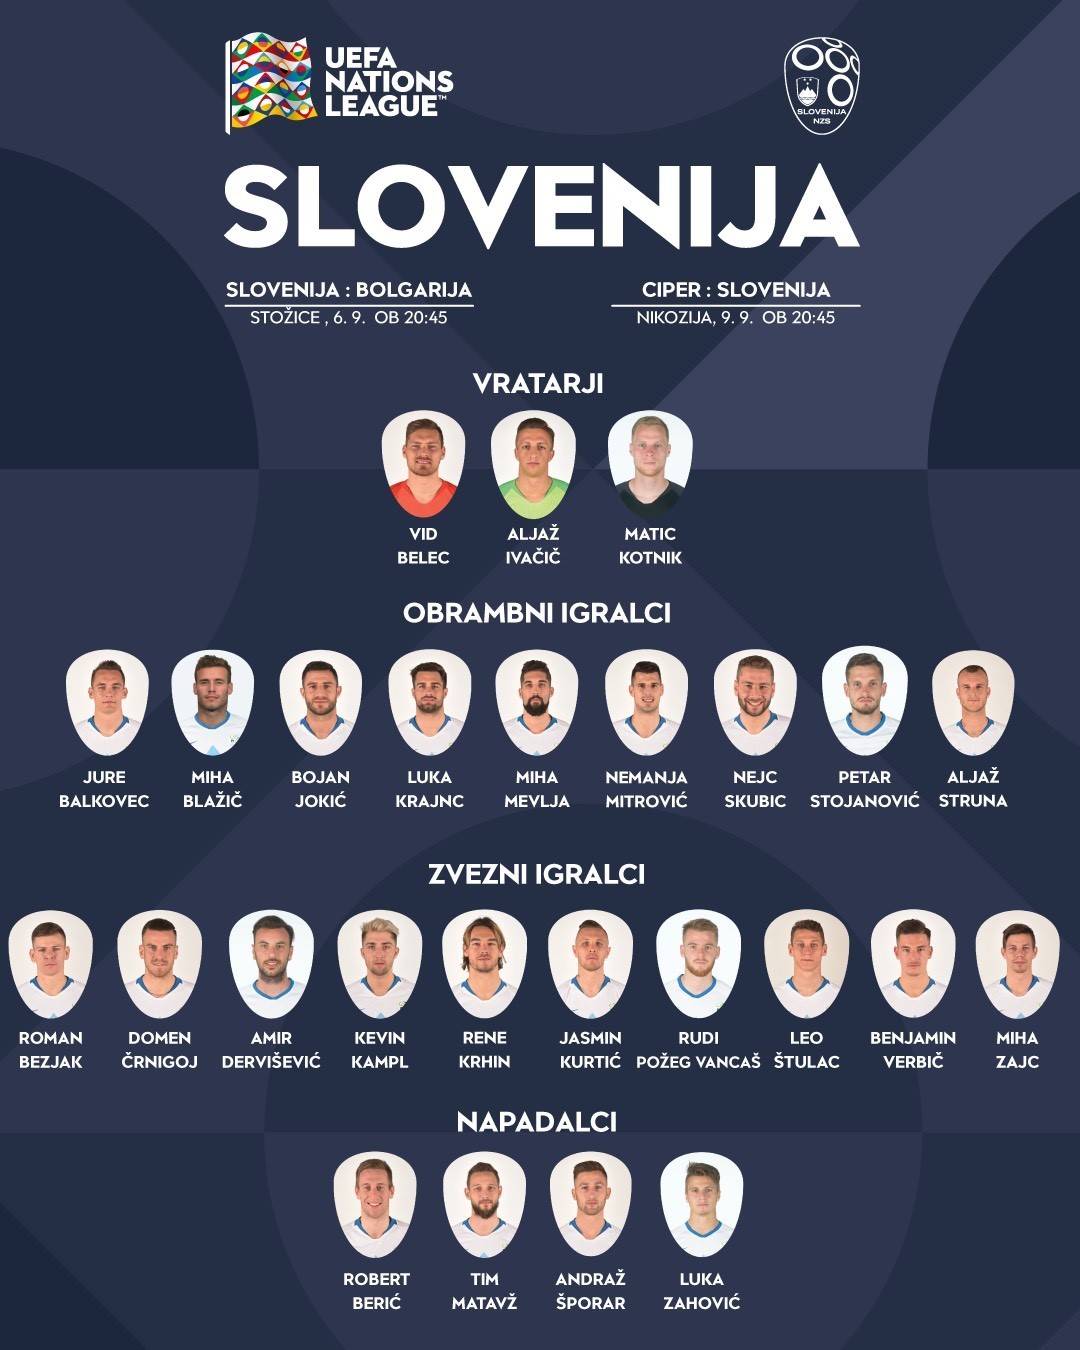 Беньямина Вербича вызвали в сборную Словении - изображение 1